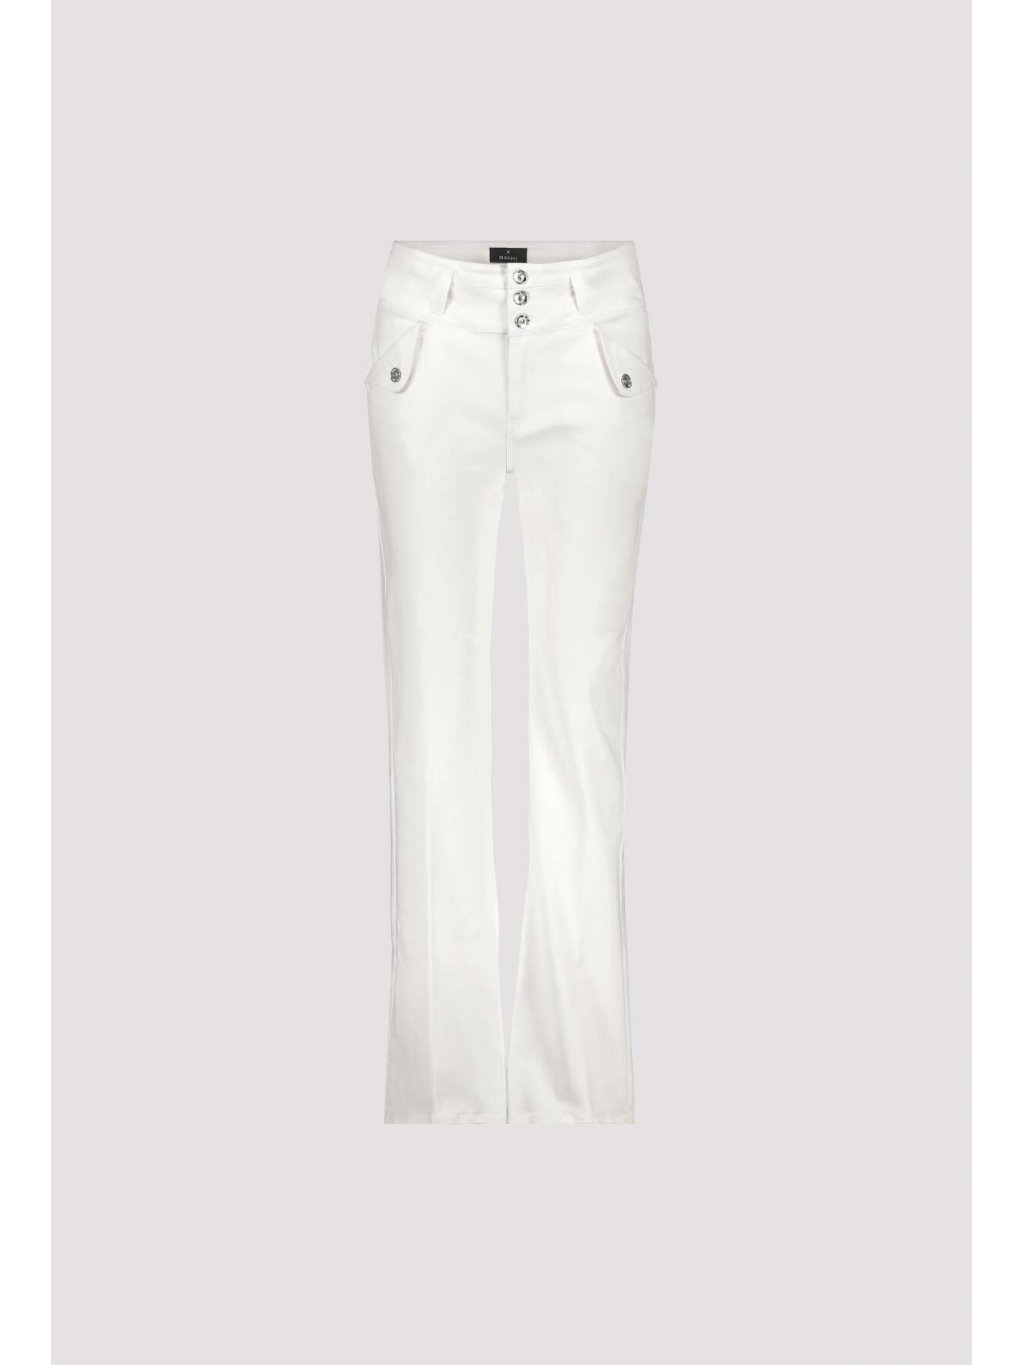 Kalhoty Monari 8960 bílé rozšířené džíny 